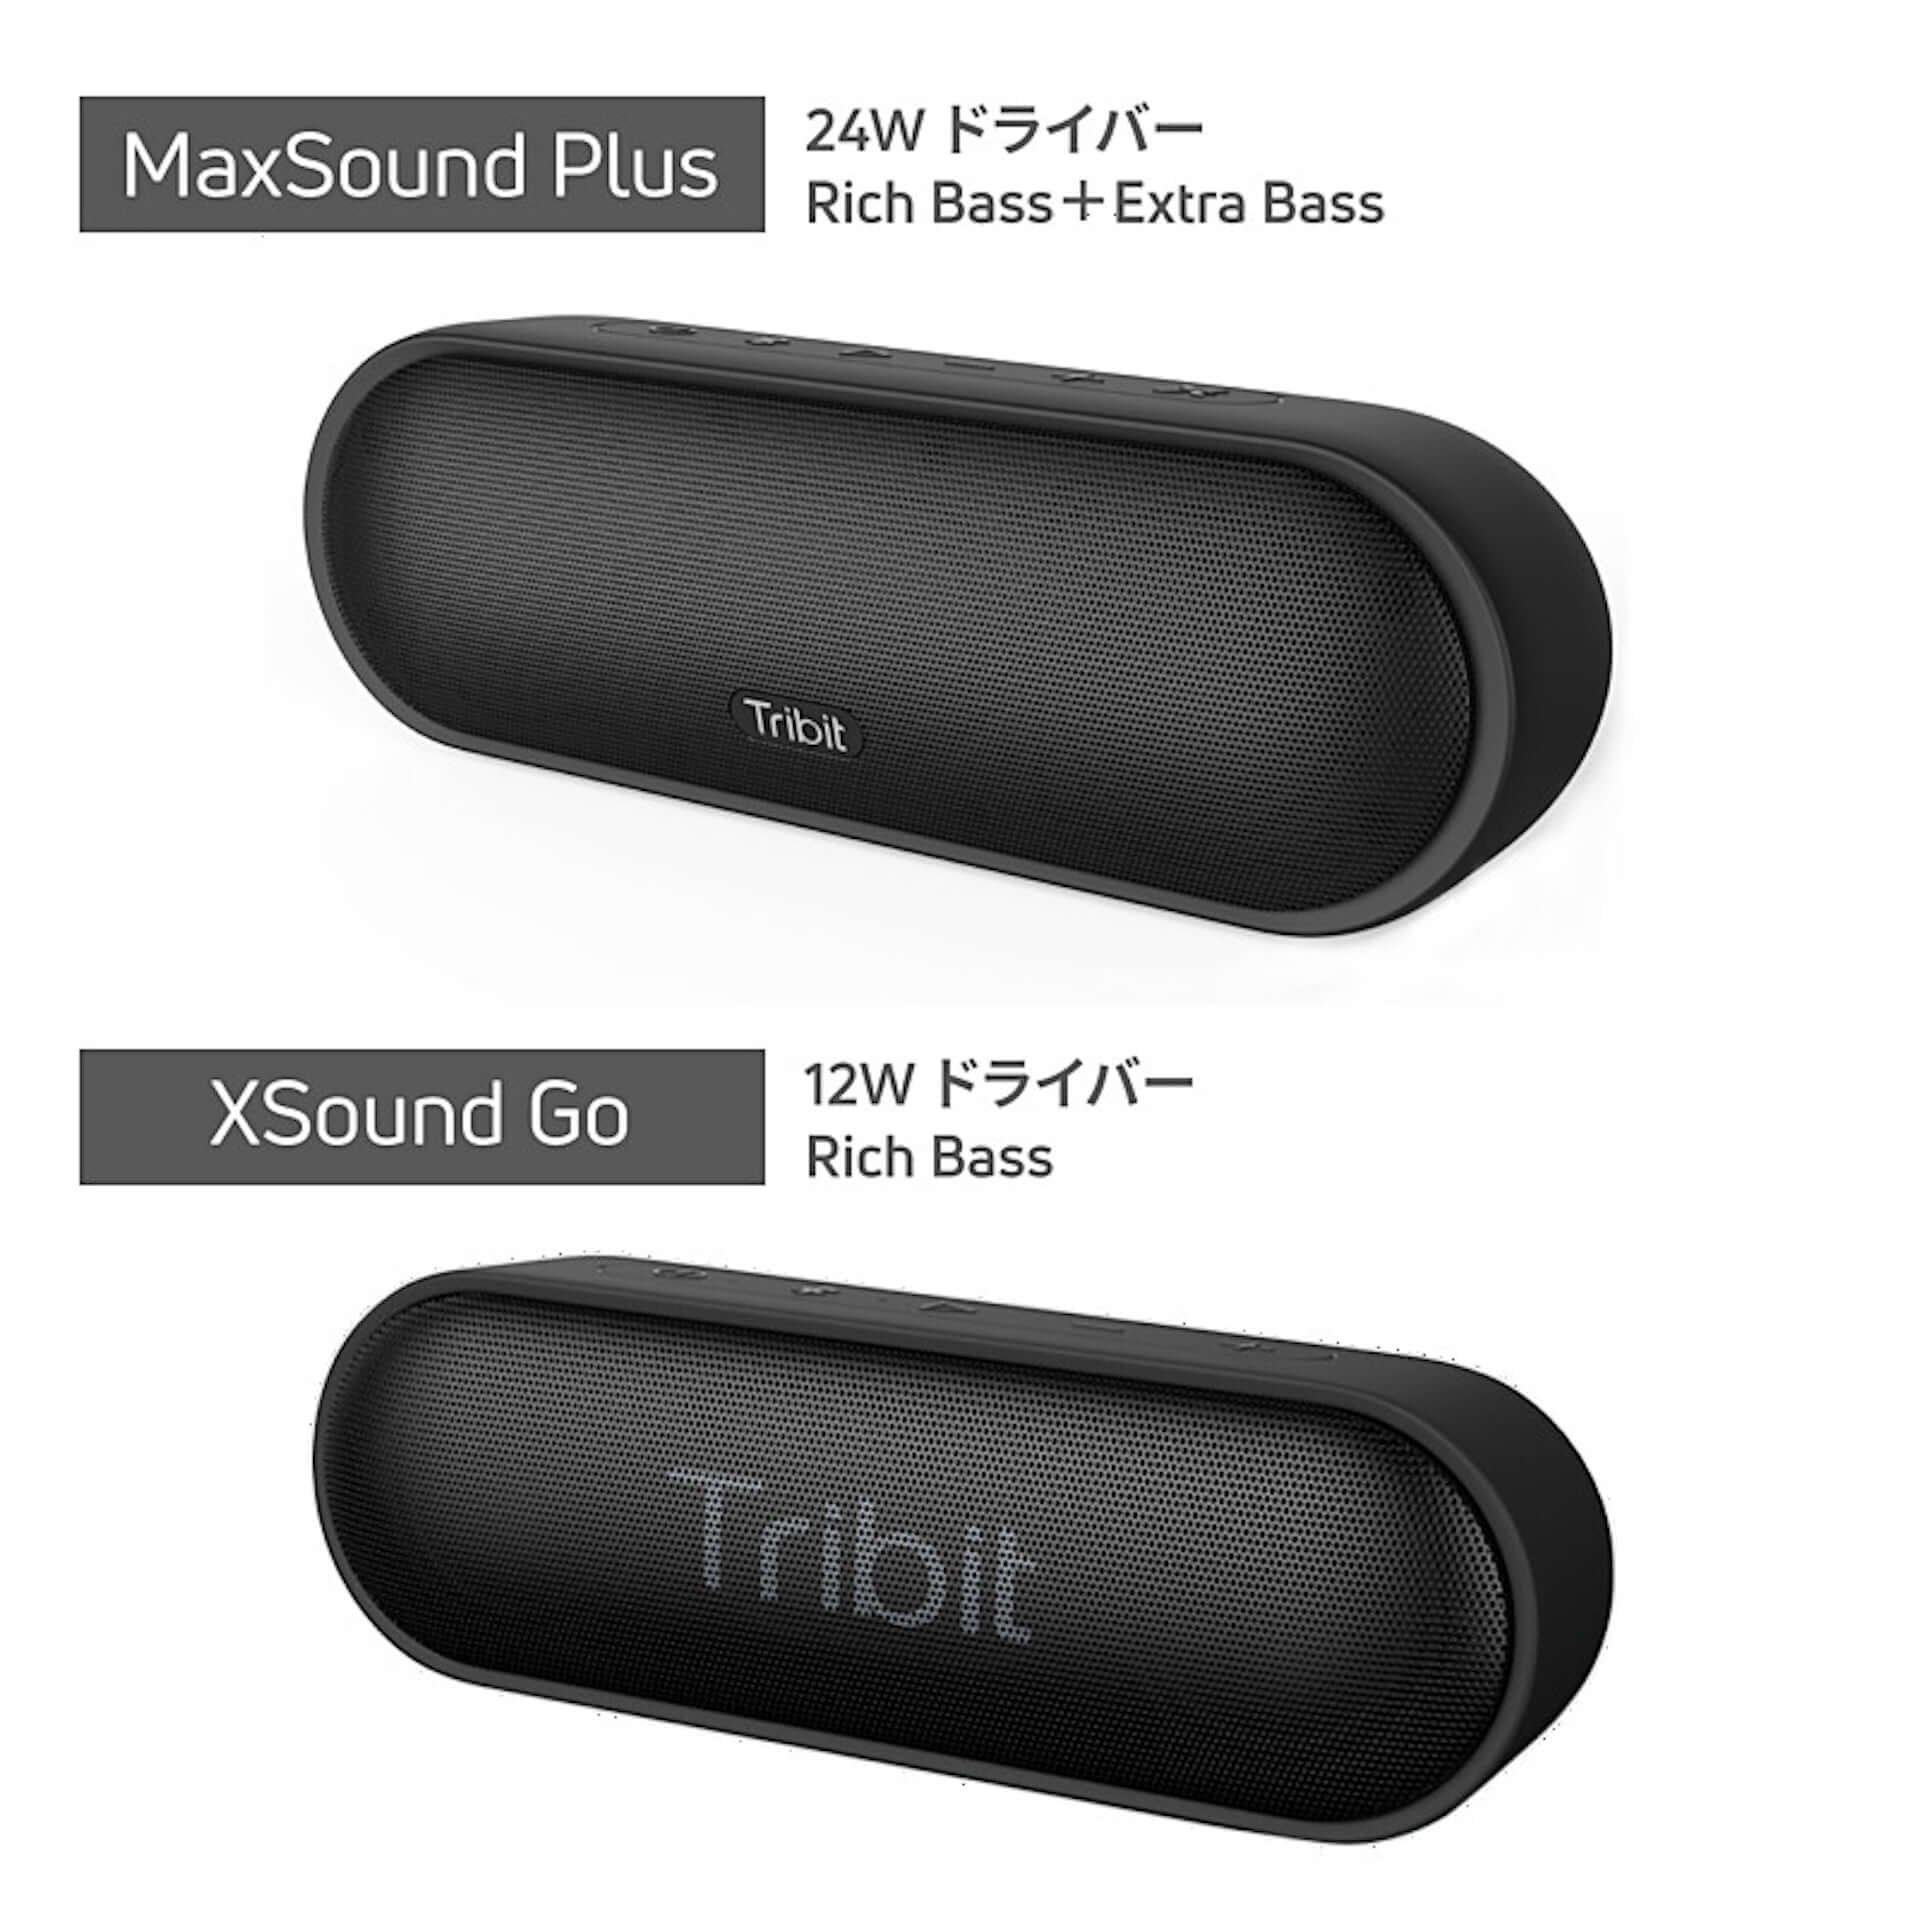 防水・重低音・ステレオ対応のBluetoothスピーカー2種類が登場｜低音重視の「Max Sound Plus」・気軽さ重視の「XSound Go」 technology1908065tribit-btspeaker_2-1920x1920